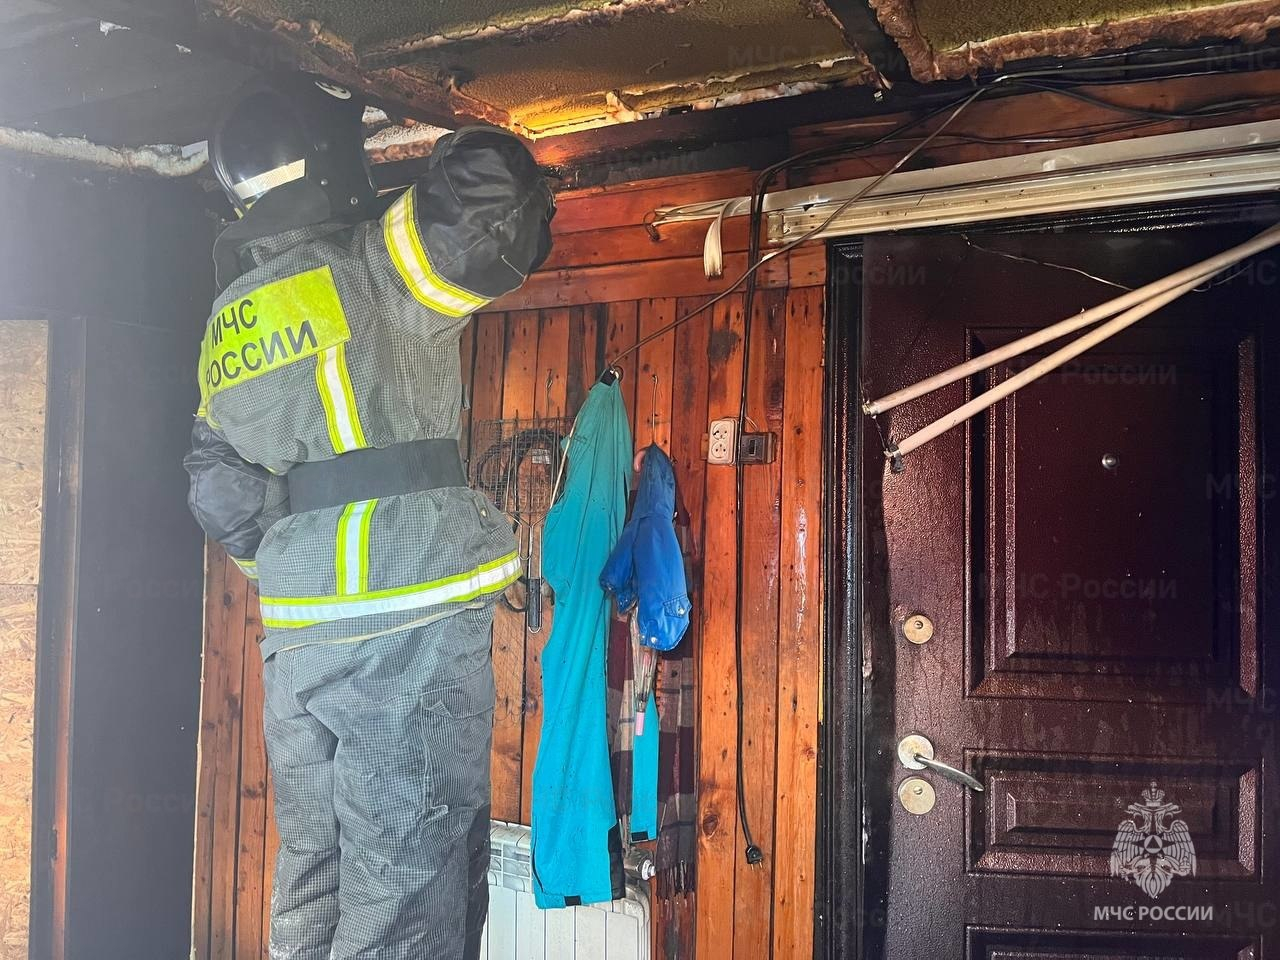 Чердак, пристройка и гараж горели в двухквартирном доме в Некрасовке